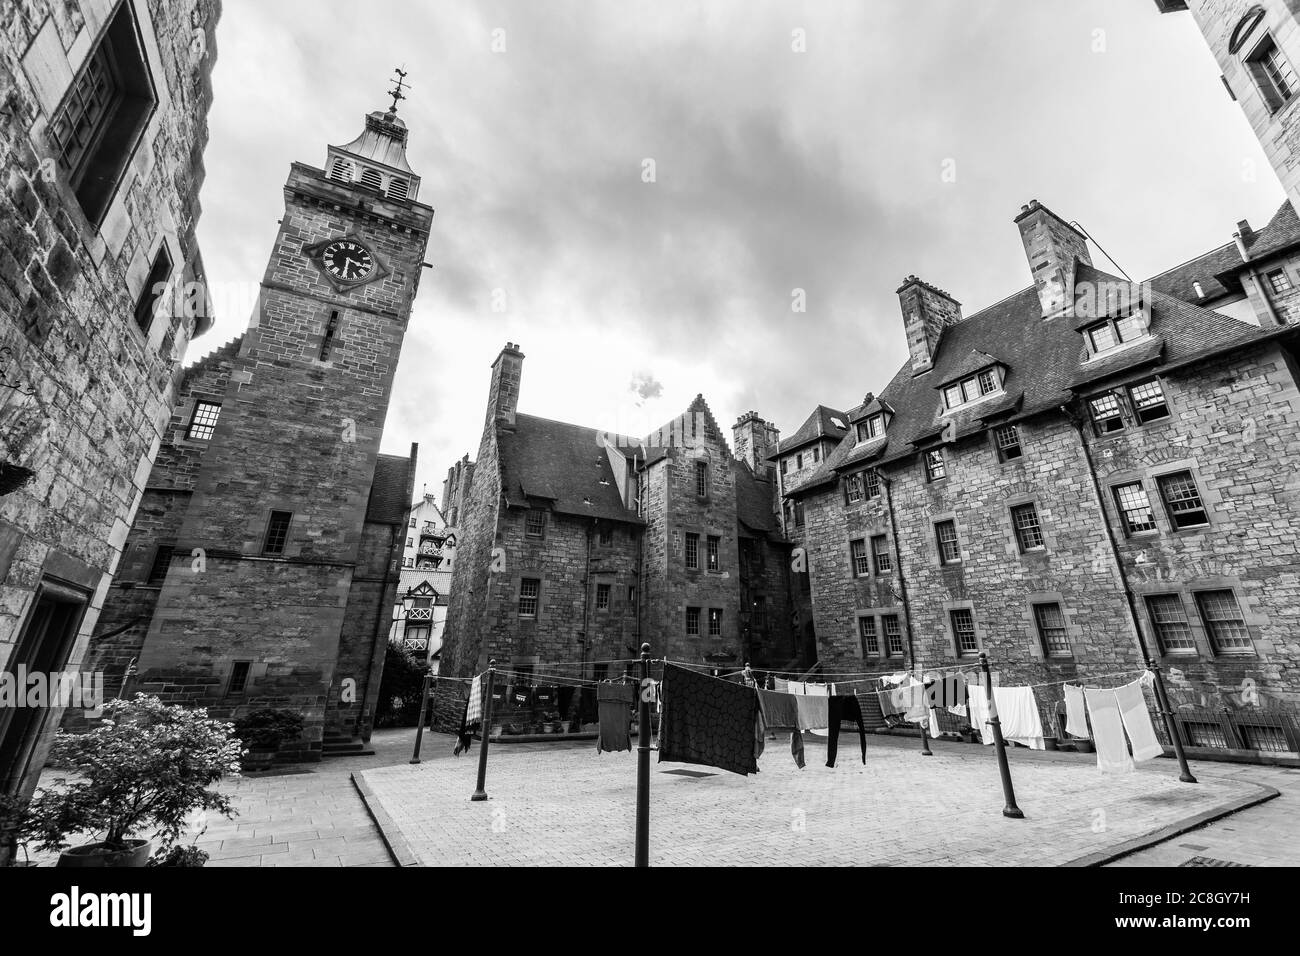 Splendida vista in una città d'epoca e tradizionale di Edimburgo. Prospettiva in bianco e nero sugli angoli scozzesi. Foto Stock